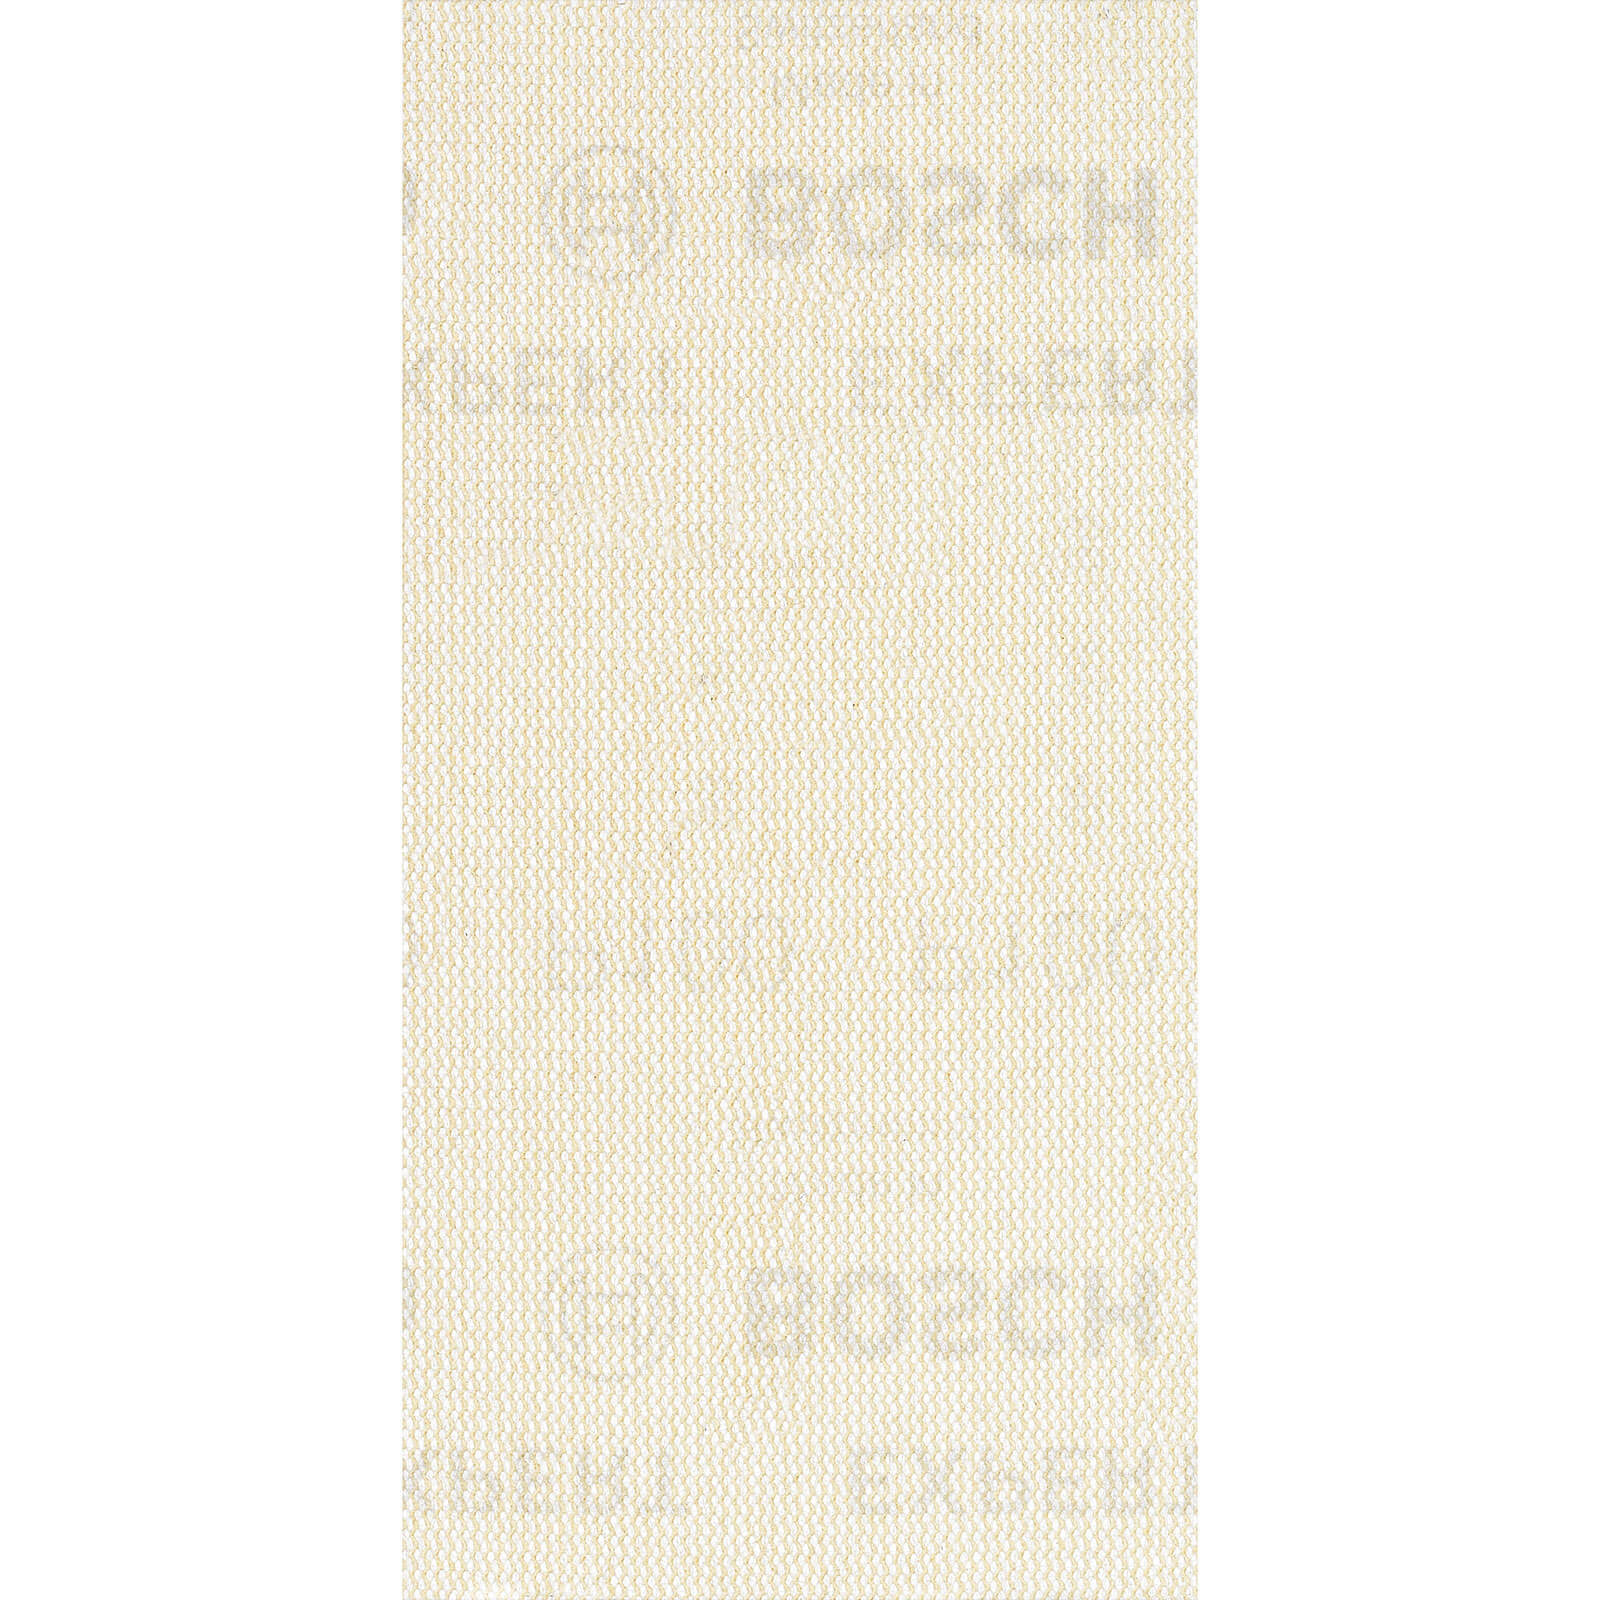 Photo of Bosch Expert M480 93mm X 186mm Net Abrasive Sanding Sheets 93mm X 186mm 100g Pack Of 10